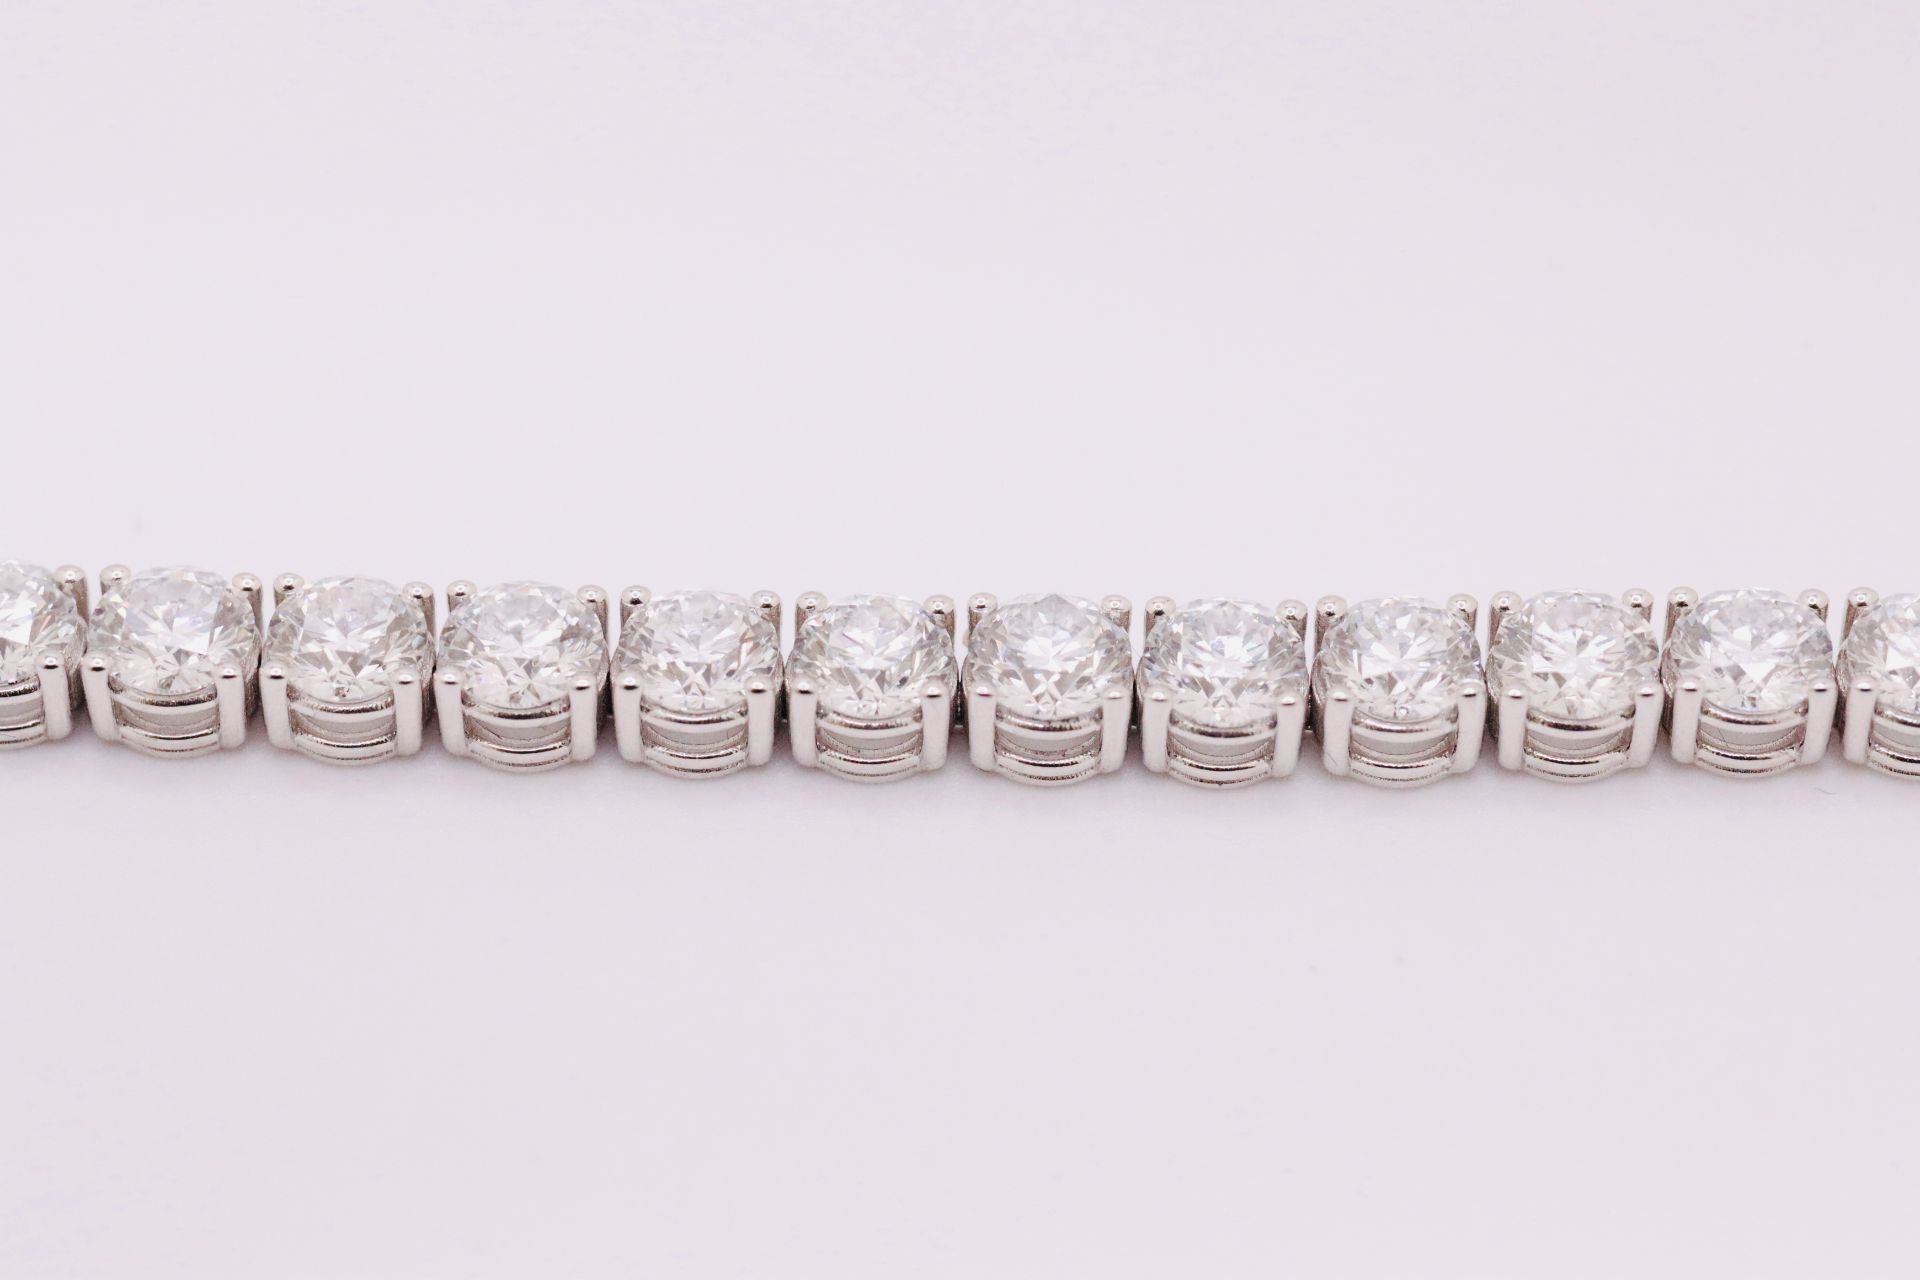 Round Brilliant Cut 21 Carat Diamond Tennis Bracelet D Colour VVS Clarity - 18Kt White Gold - IGI - Image 7 of 9